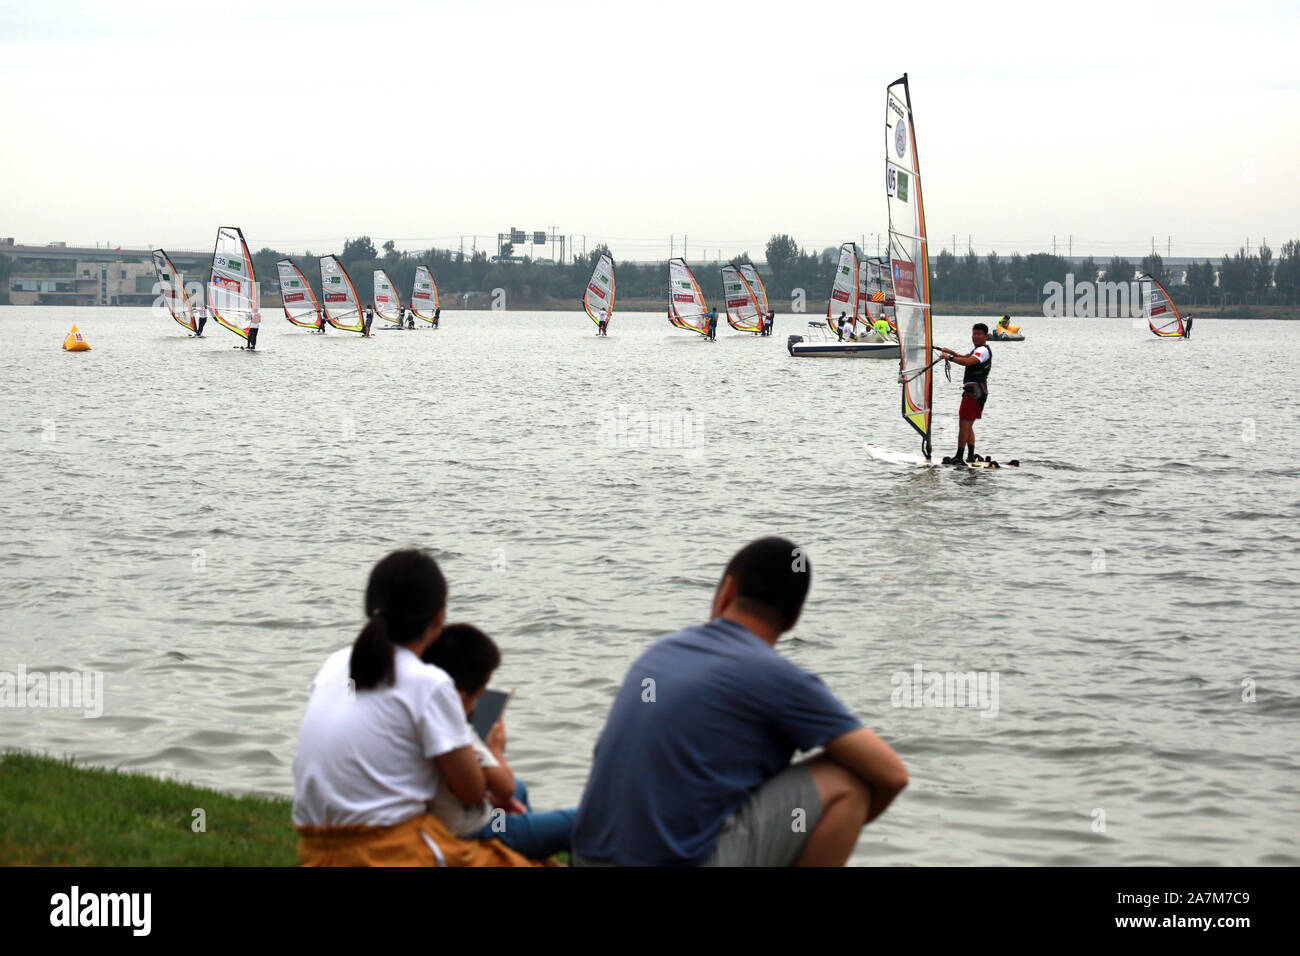 Les gens regardent la 11e Défi Planche à voile au lac de lilas Park dans la ville de Shenyang, au nord-est de la Chine, la province de Liaoning, le 7 septembre 2019. Banque D'Images